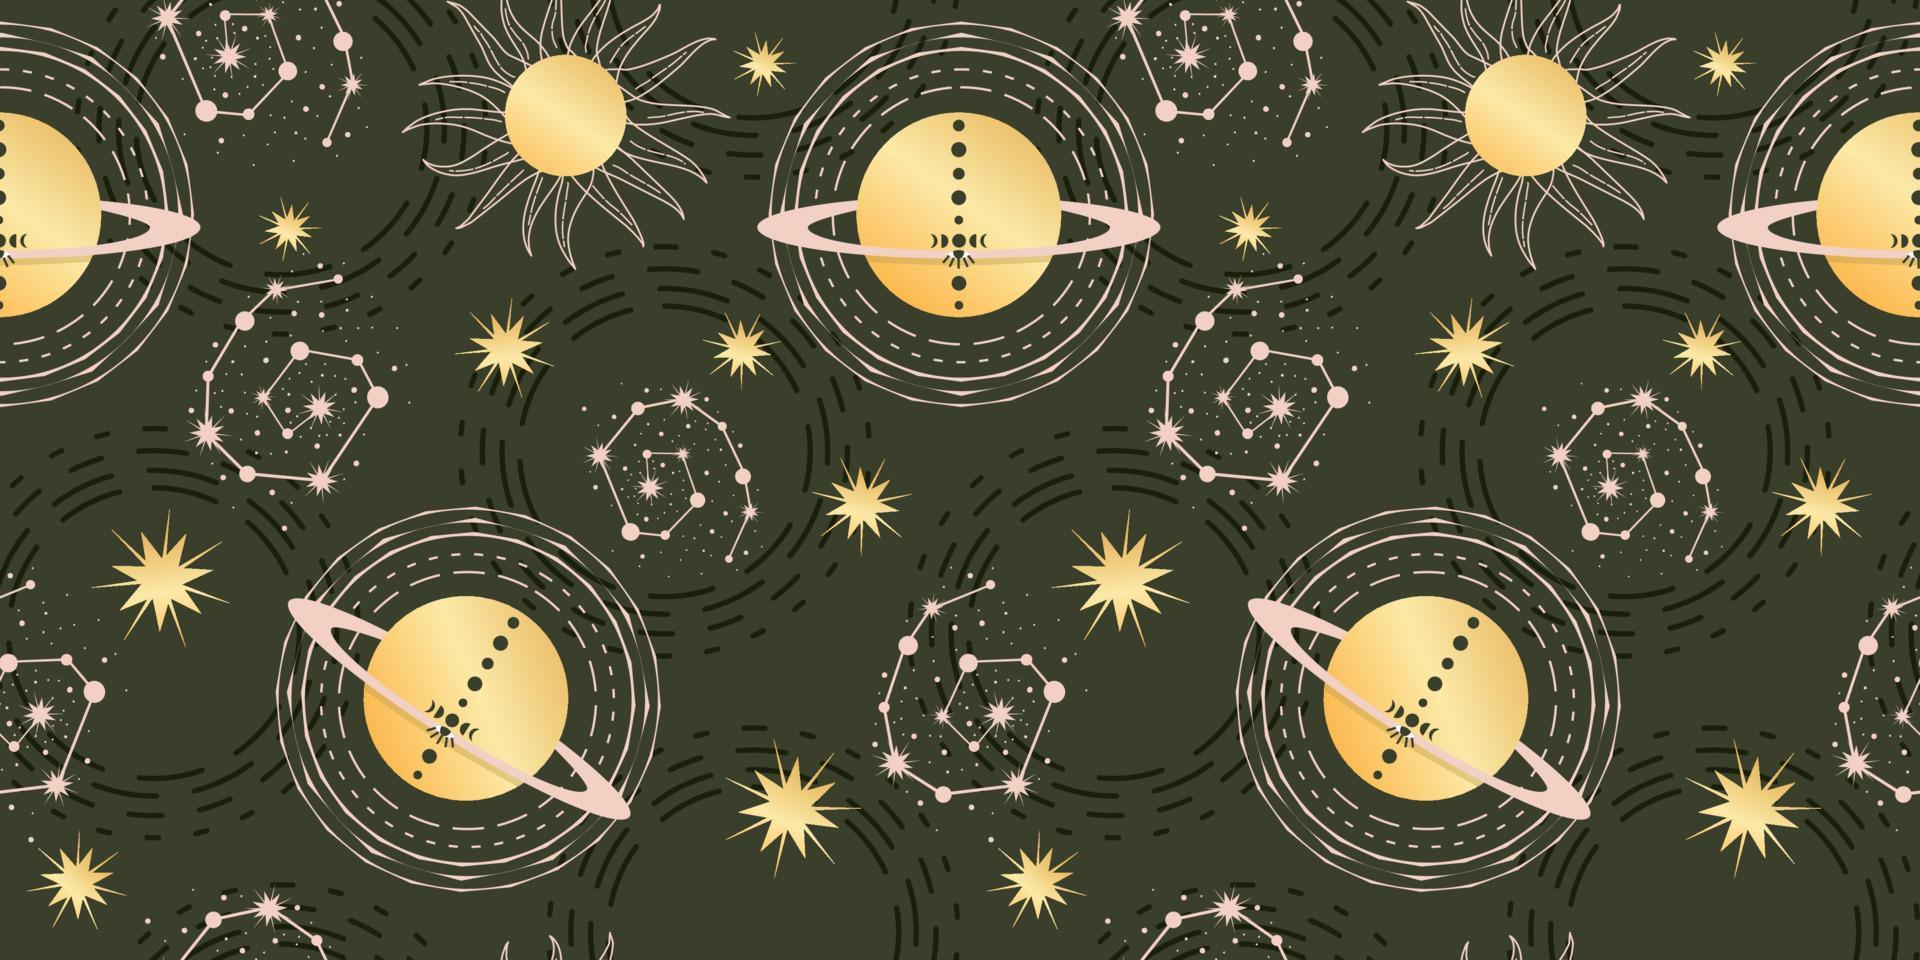 stjärna himmelska sömlösa mönster med planet och konstellationer. magisk astrologi i vintage boho stil. gyllene sol med månfaser och stjärnor. vektor illustration